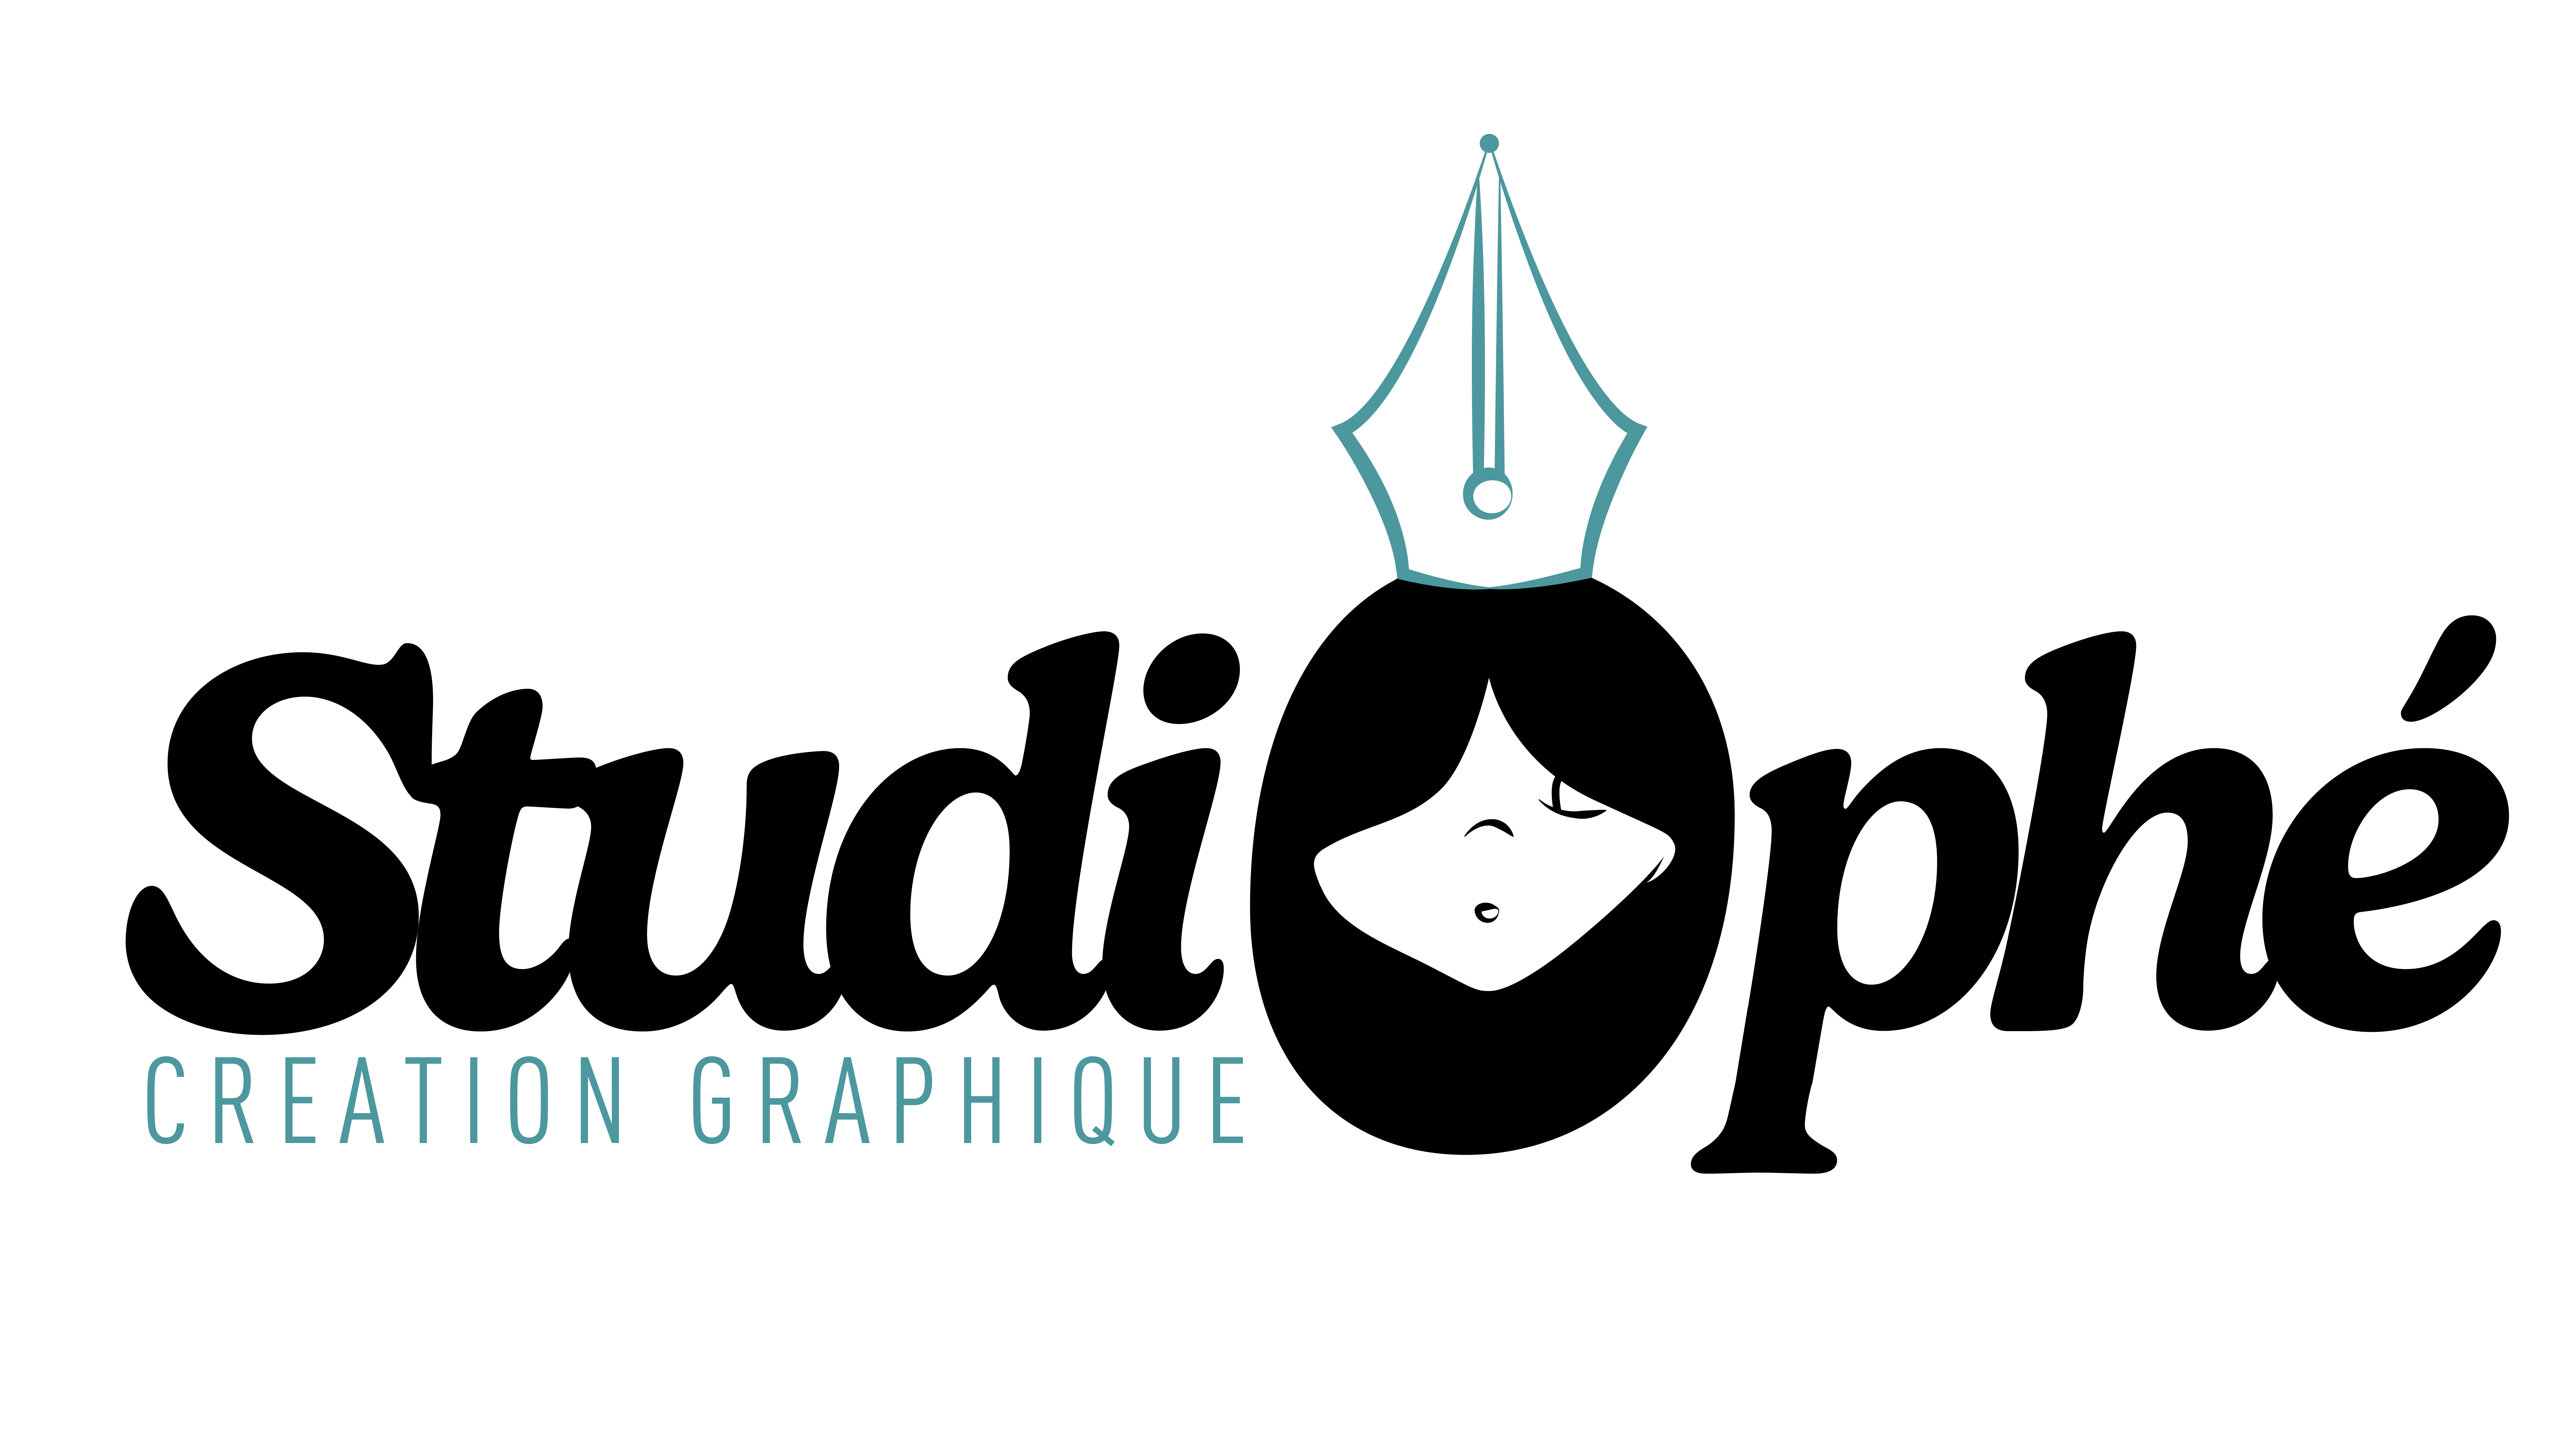 logo vectorisé studiophe graphiste perpignan opheline saincet studio graphique creation